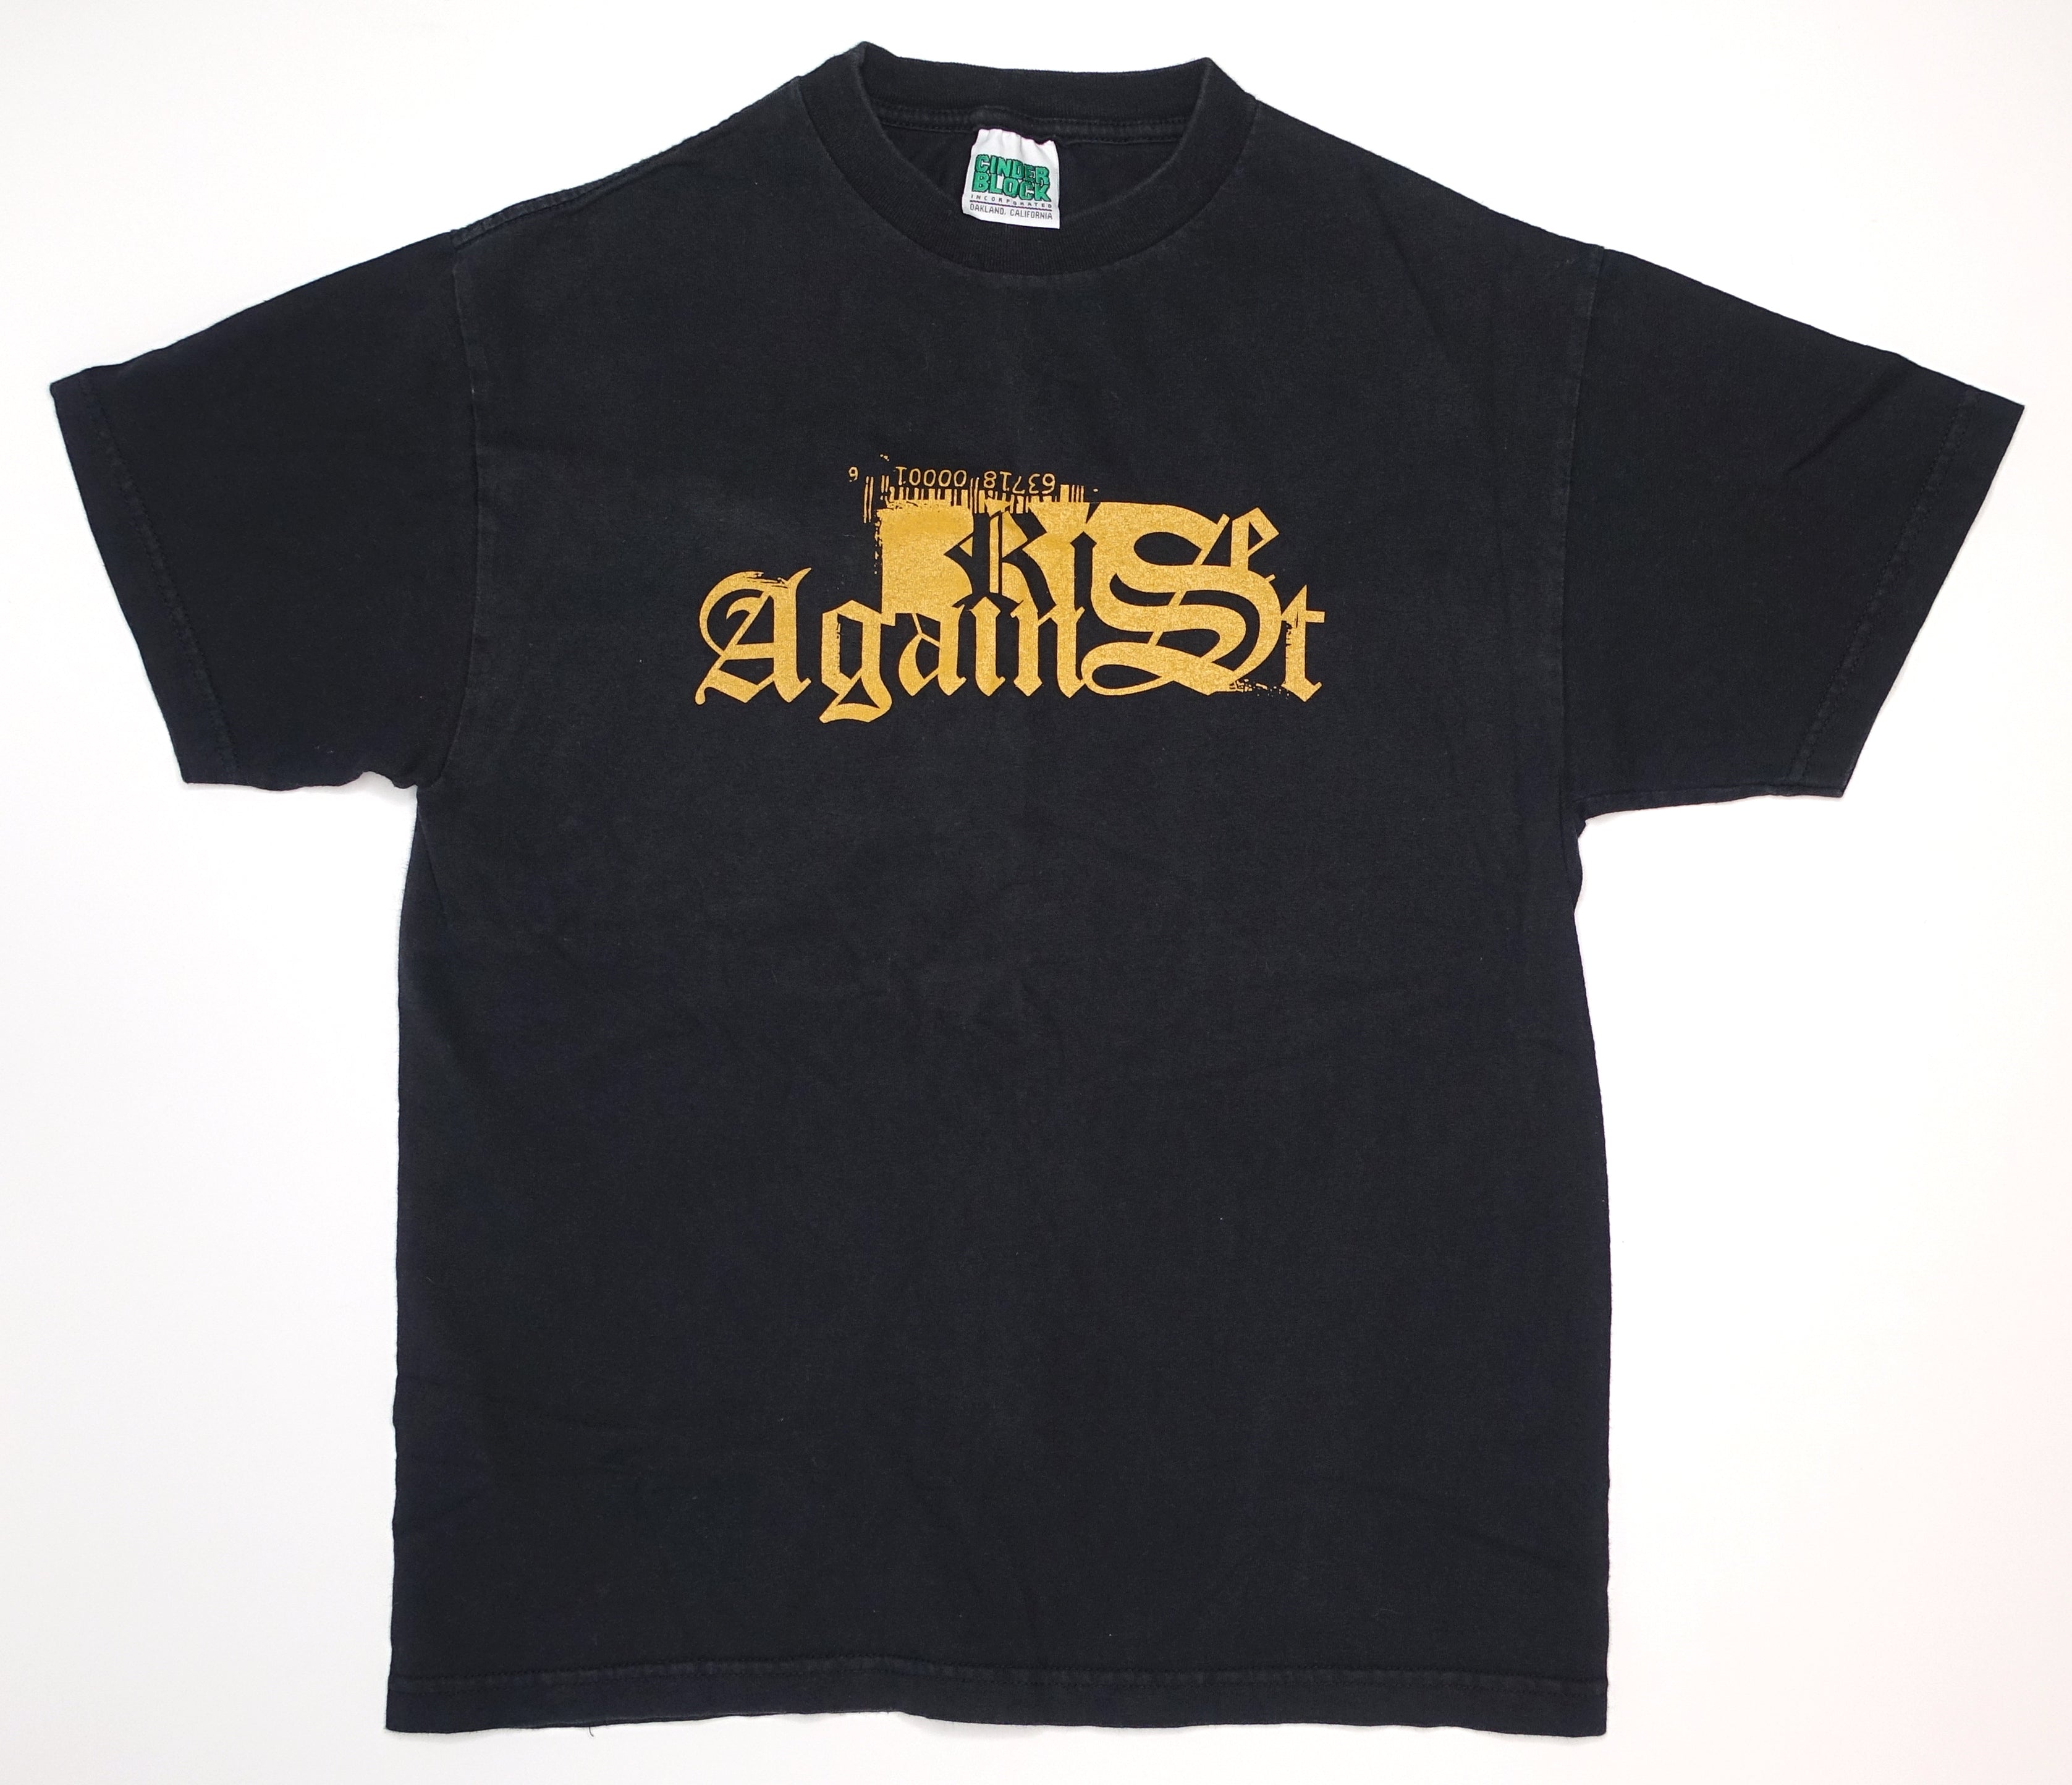 Rise Against ‎– Generation Lo$t 2000's Tour Shirt Size Medium